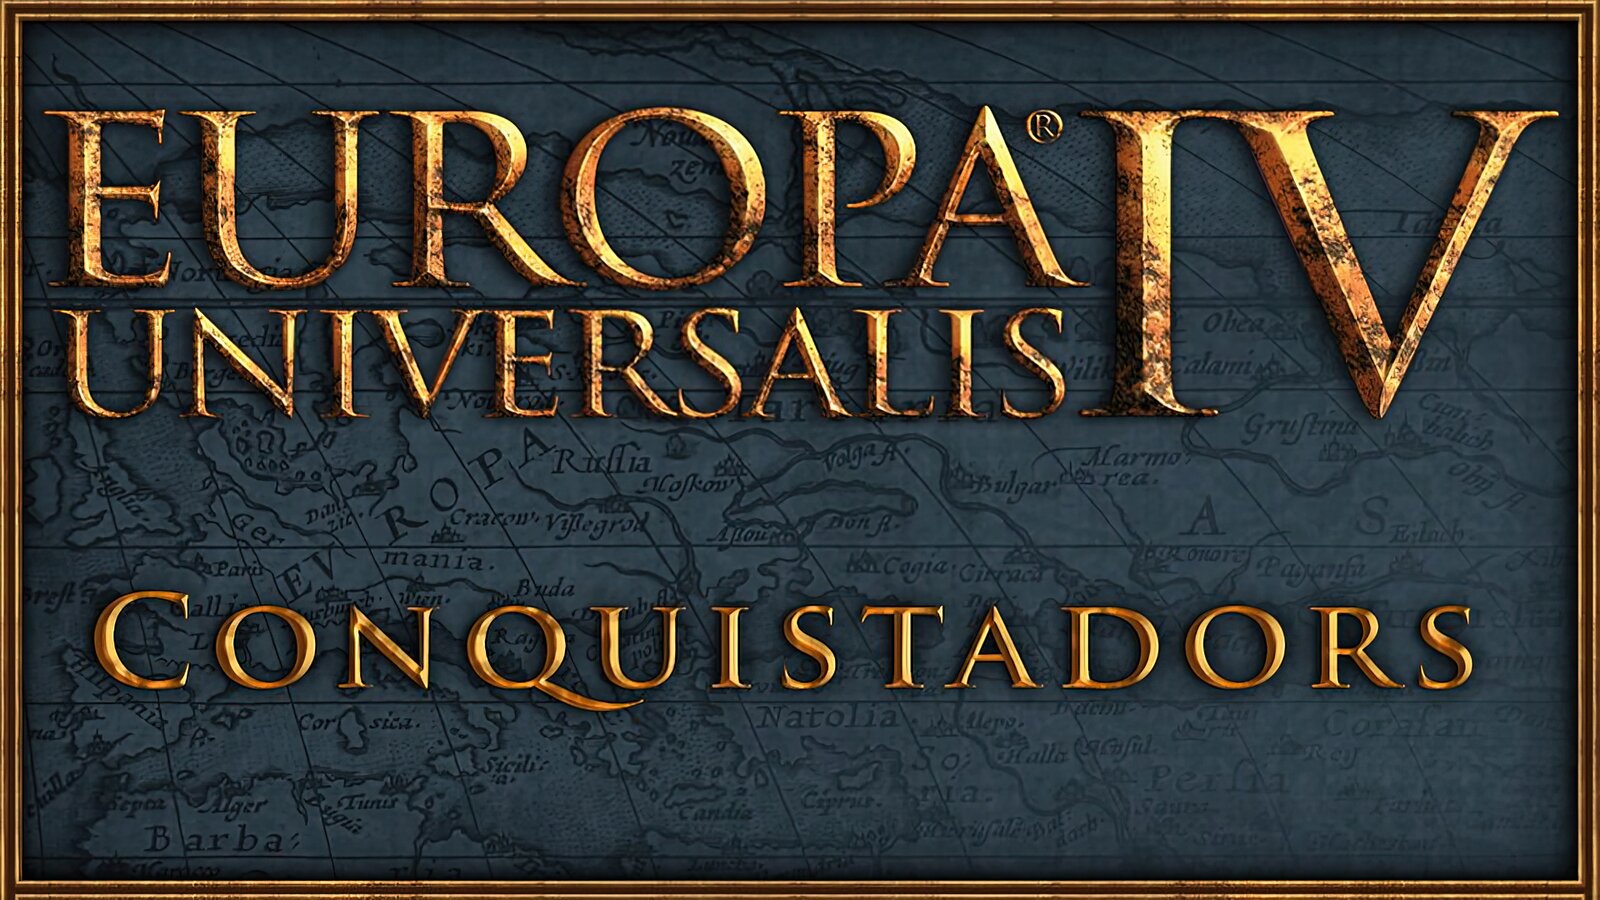 Europa Universalis IV - Conquistadors Unit Pack